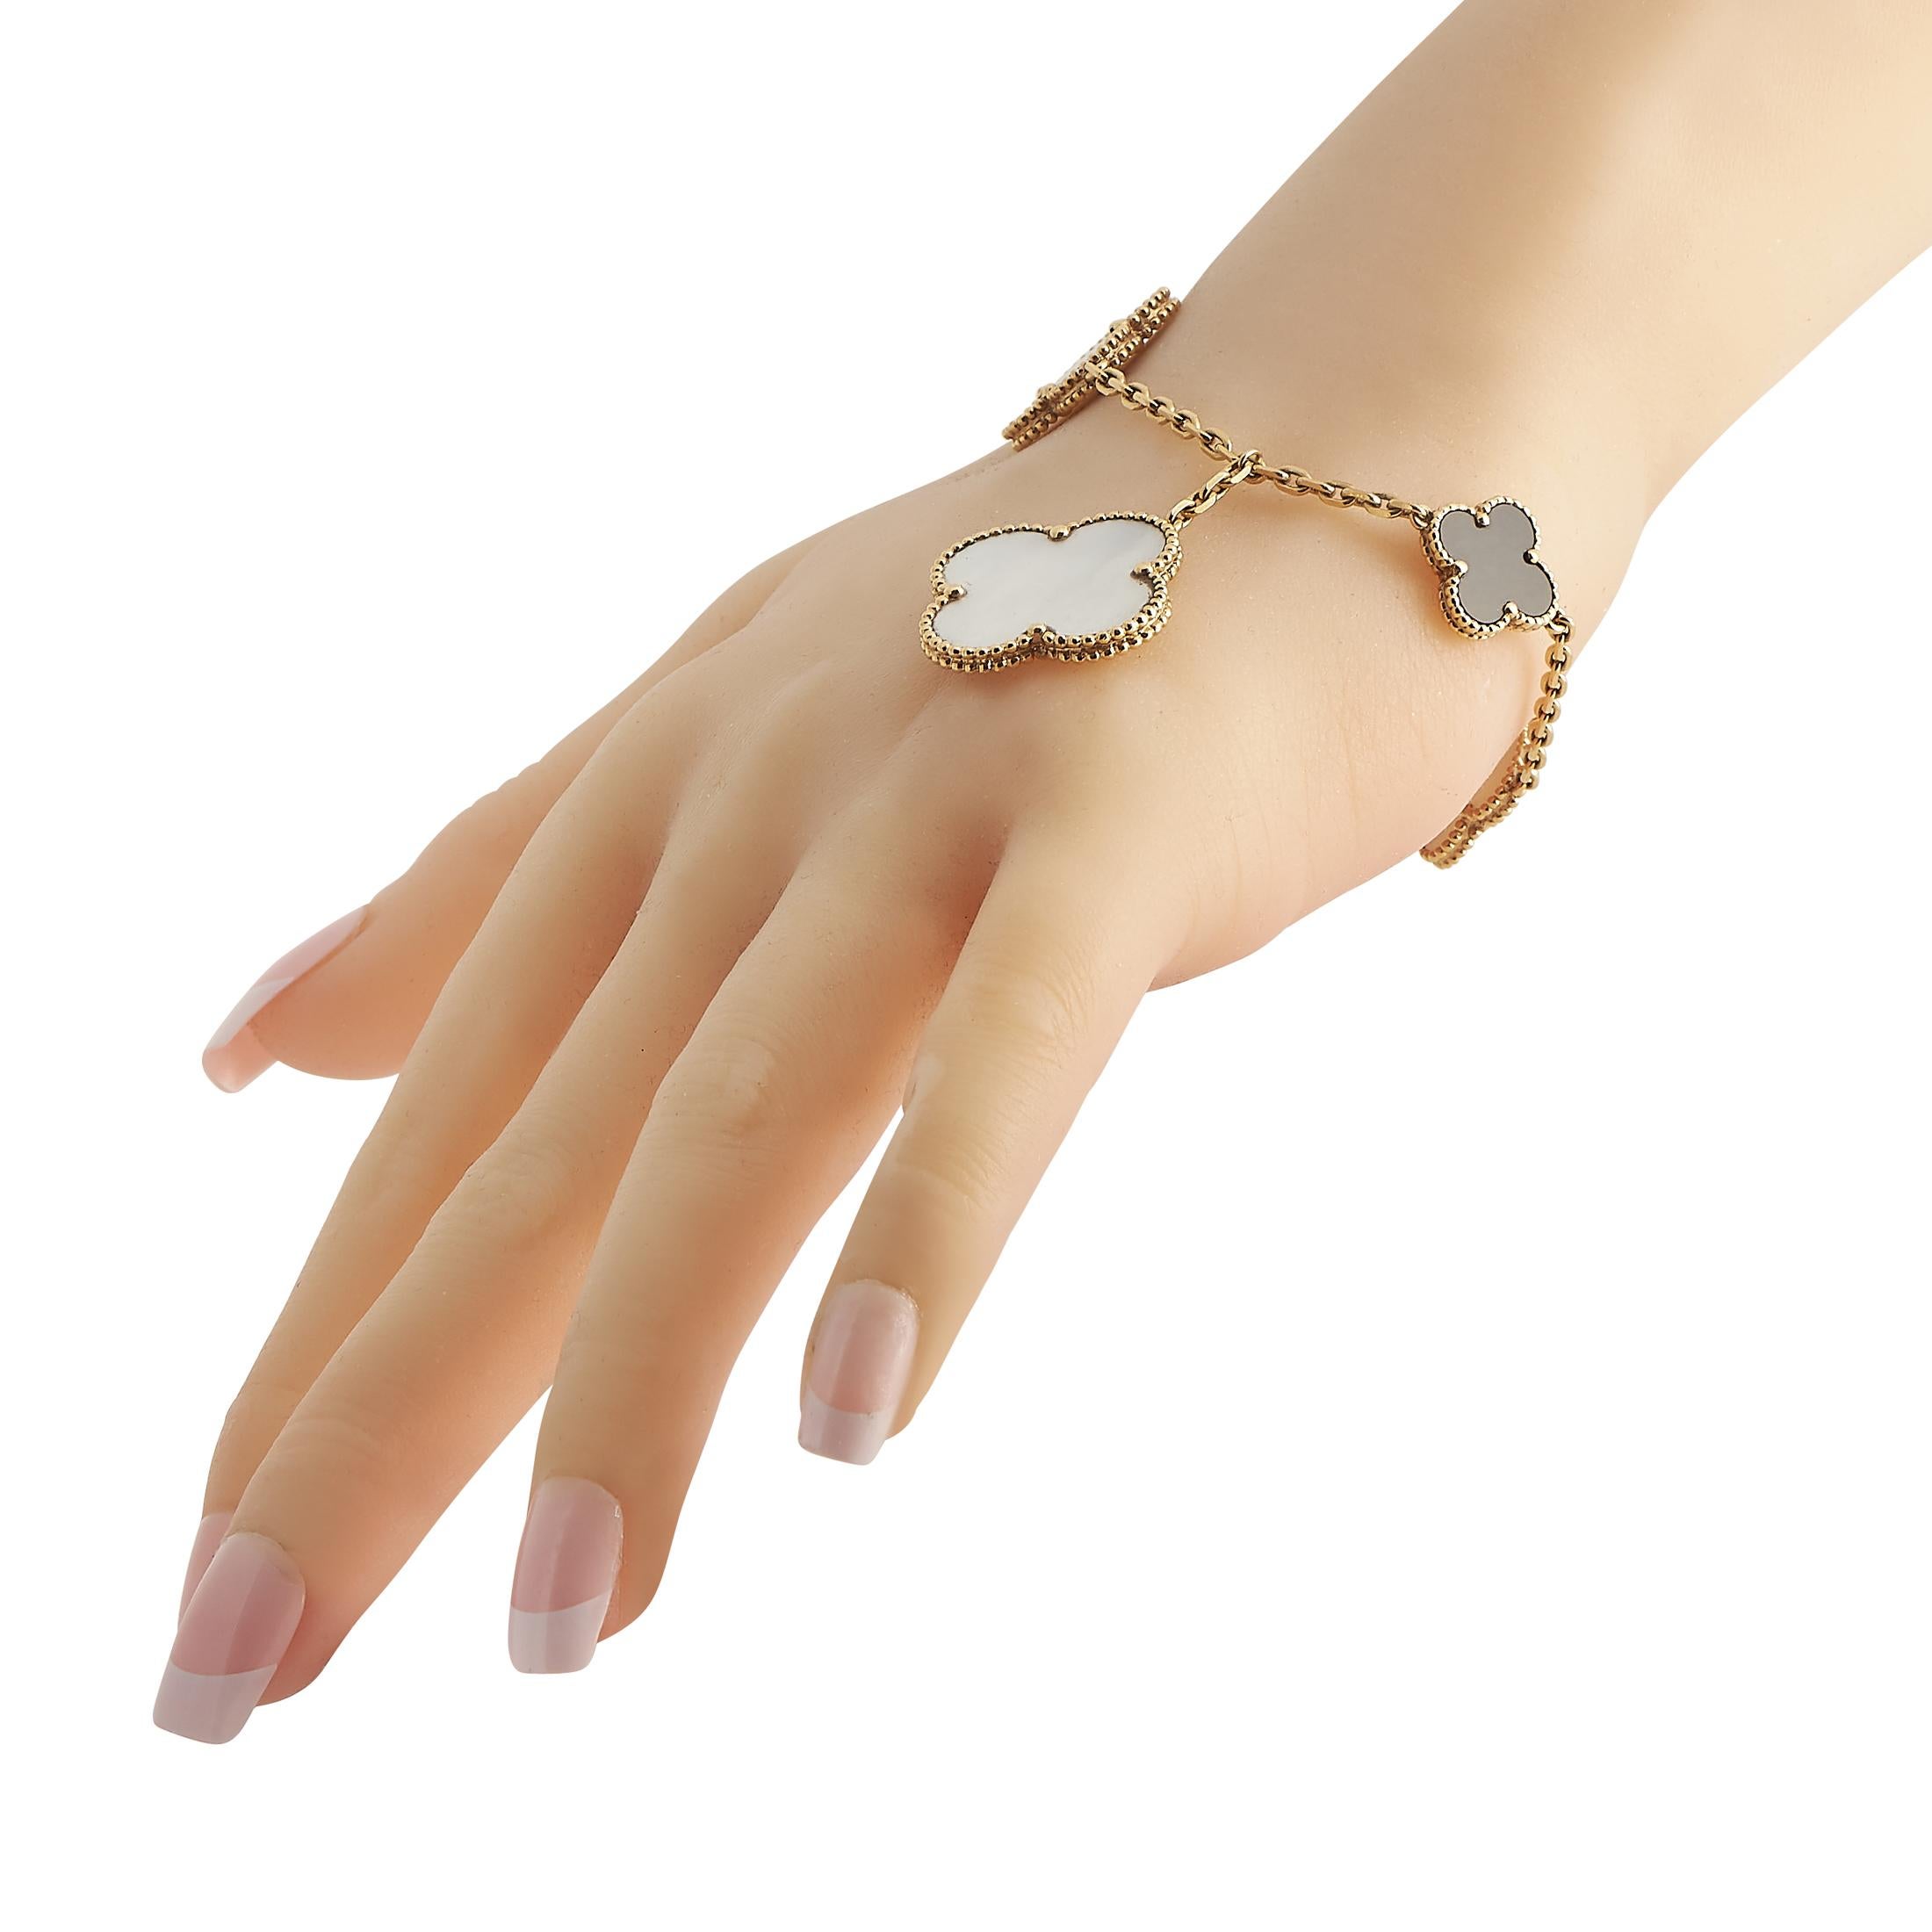 Ce bracelet Alhambra à 5 motifs de Van Cleef & Arpels vous permettra de rehausser votre style d'accessoirisation. La chaîne du bracelet en or jaune 18 carats est ornée de cinq motifs inspirés du trèfle, chacun étant incrusté de nacre (en noir, blanc